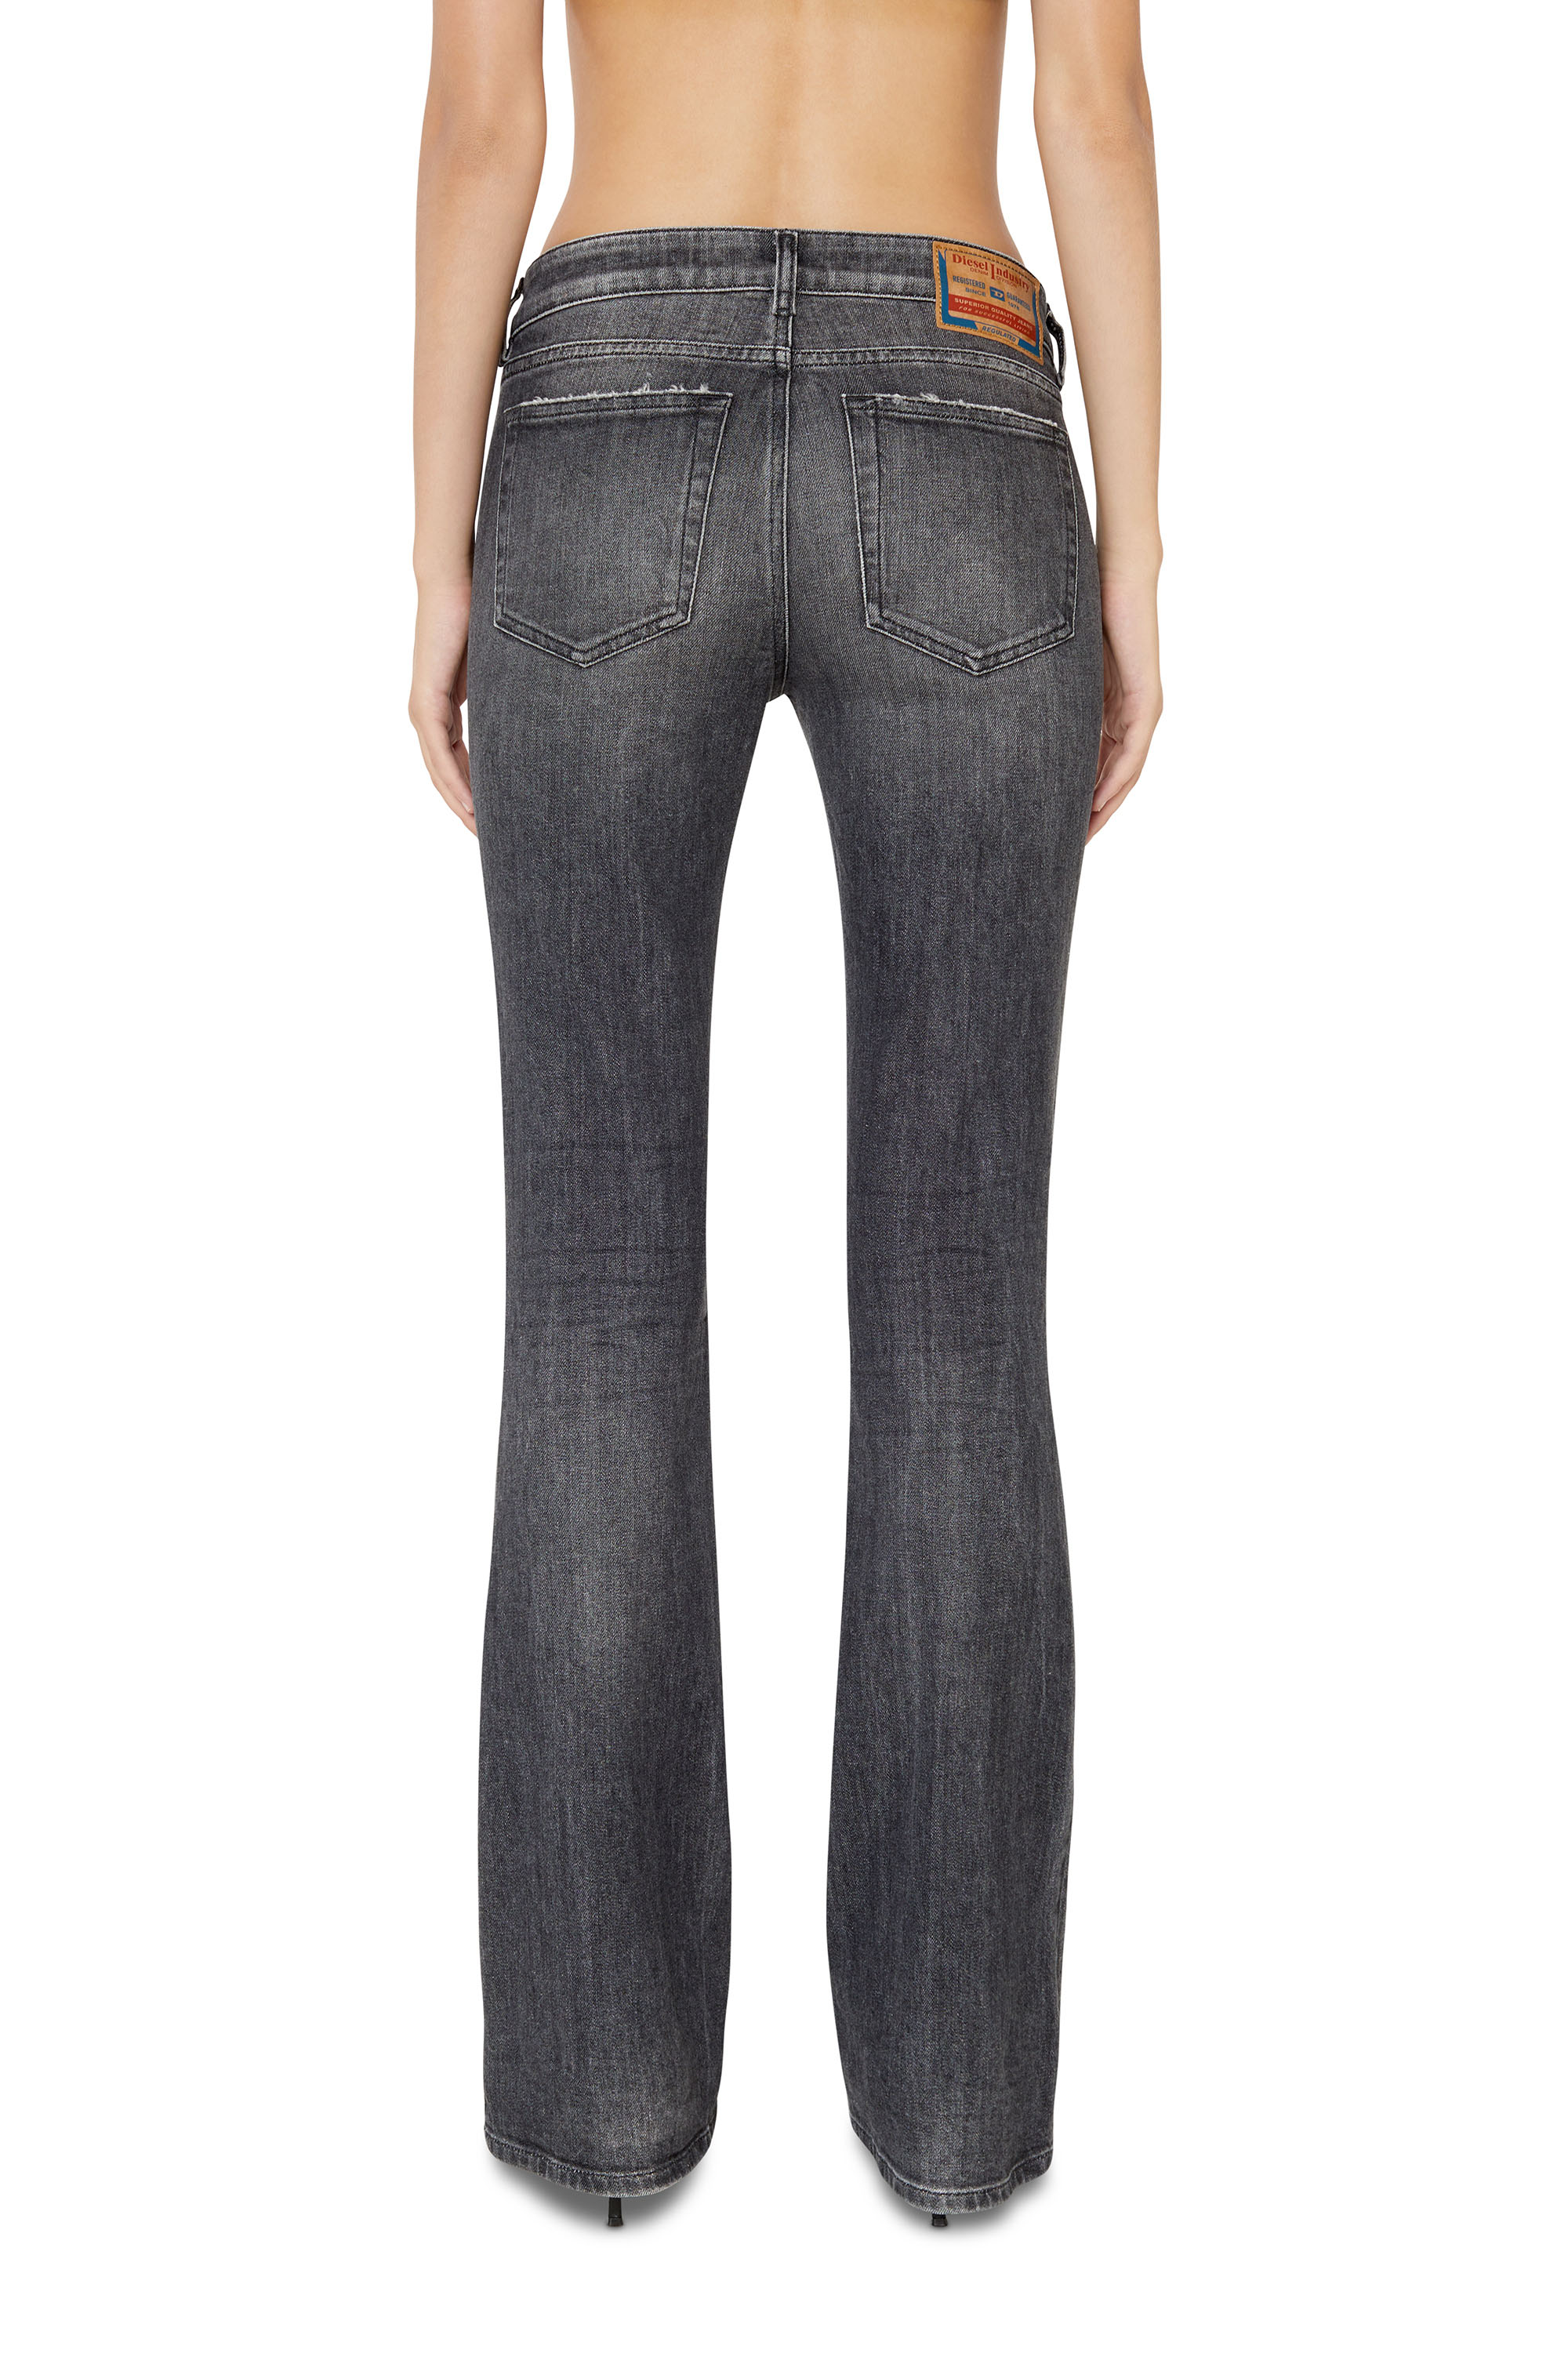 Rabatt 65 % Schwarz DAMEN Jeans Flared jeans Basisch Diesel Flared jeans 